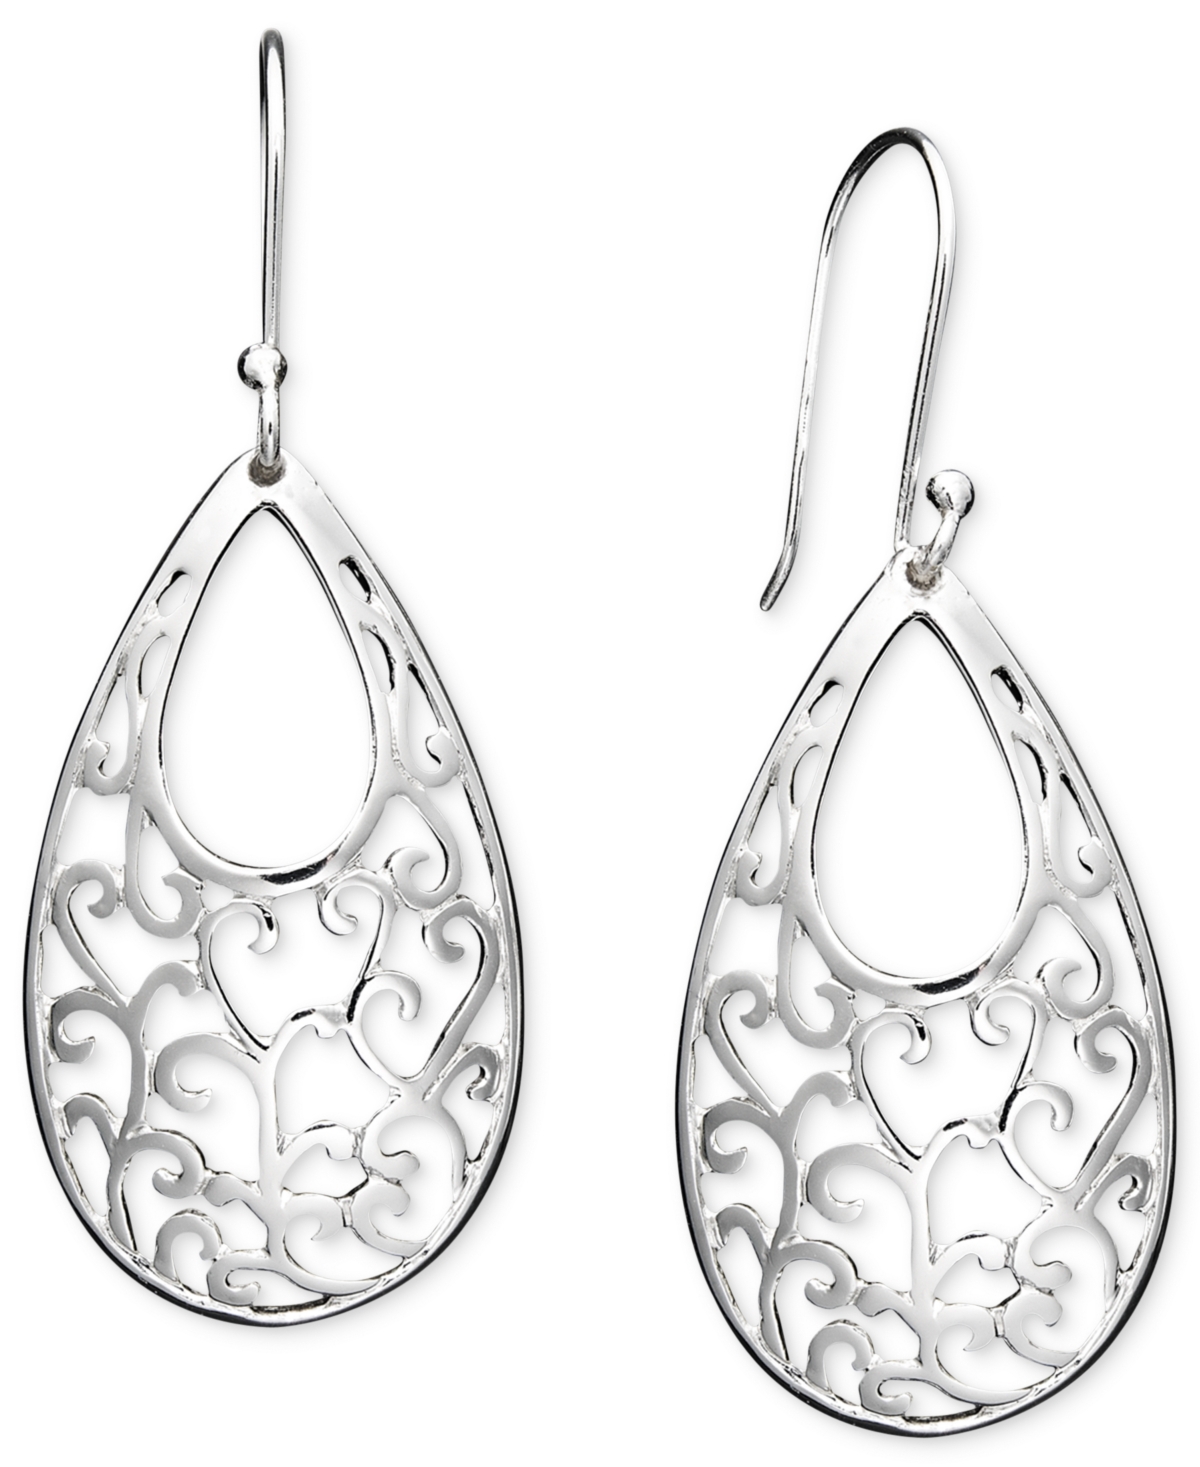 Giani Bernini Open Filigree Drop Earrings in Sterling Silver, Created for Macy's